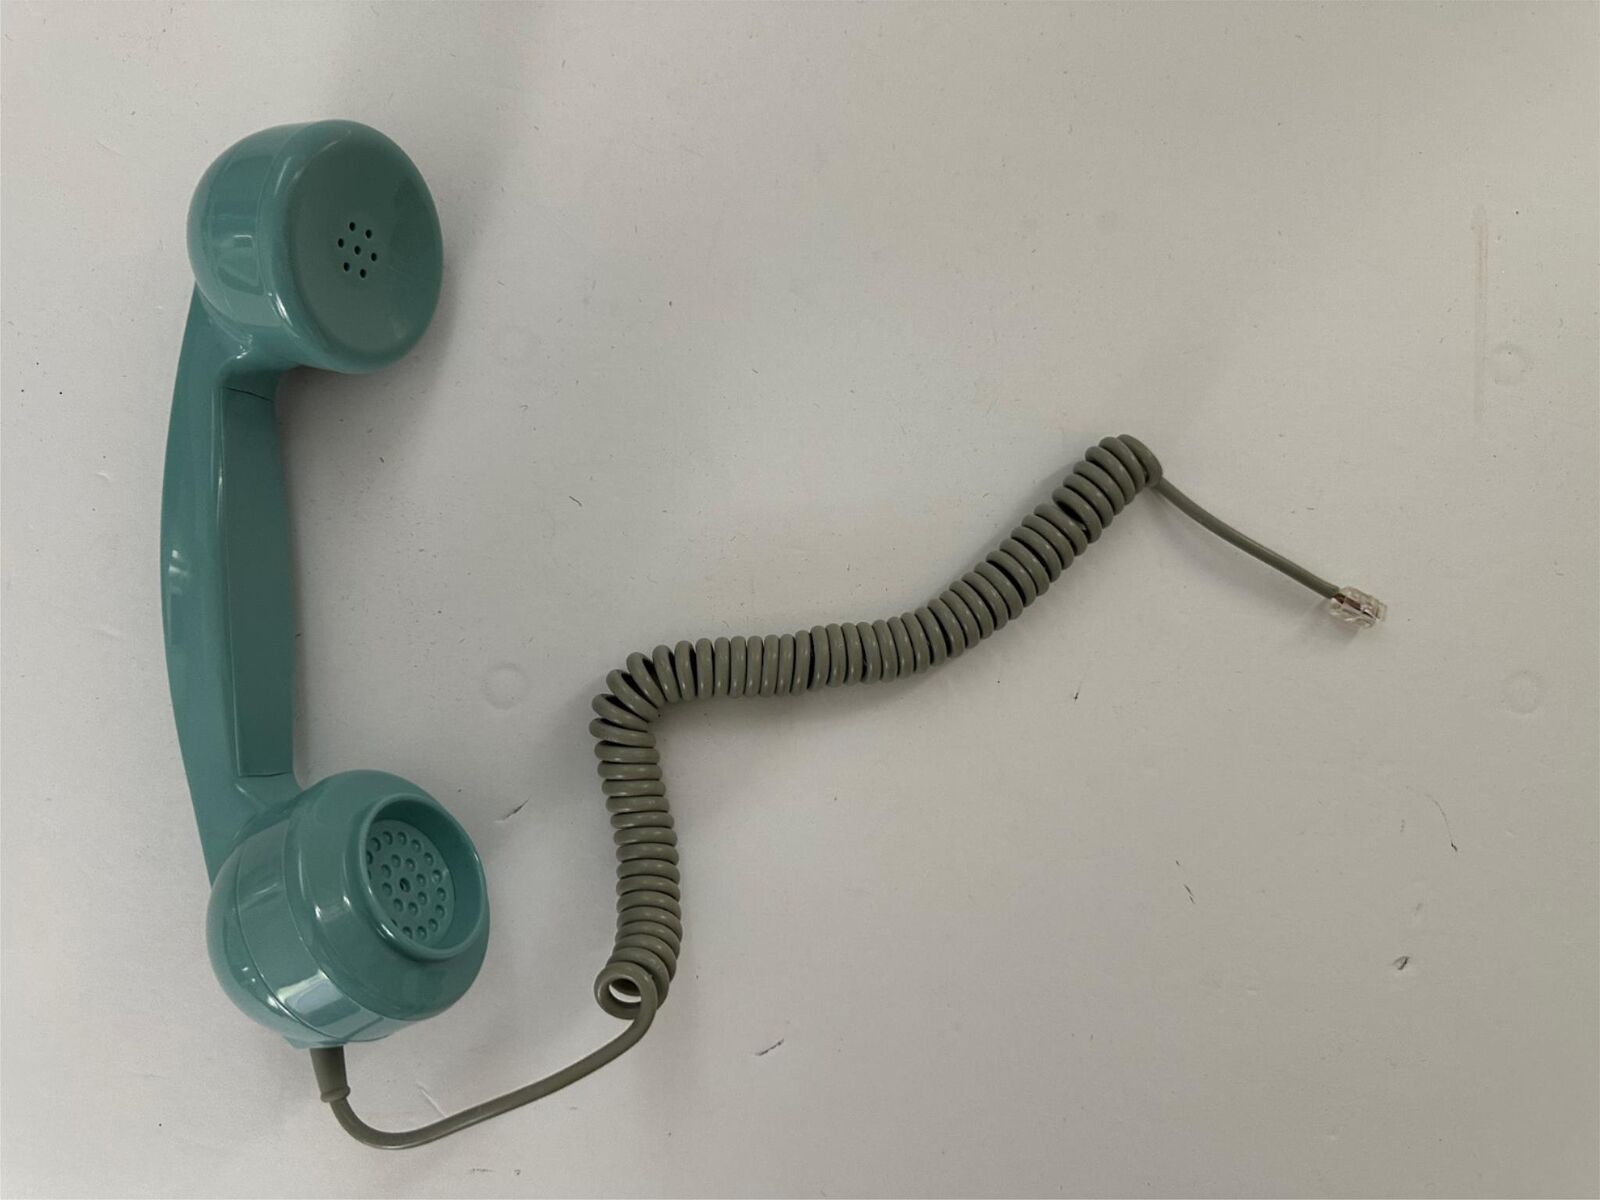 Vintage Blue Telephone handset